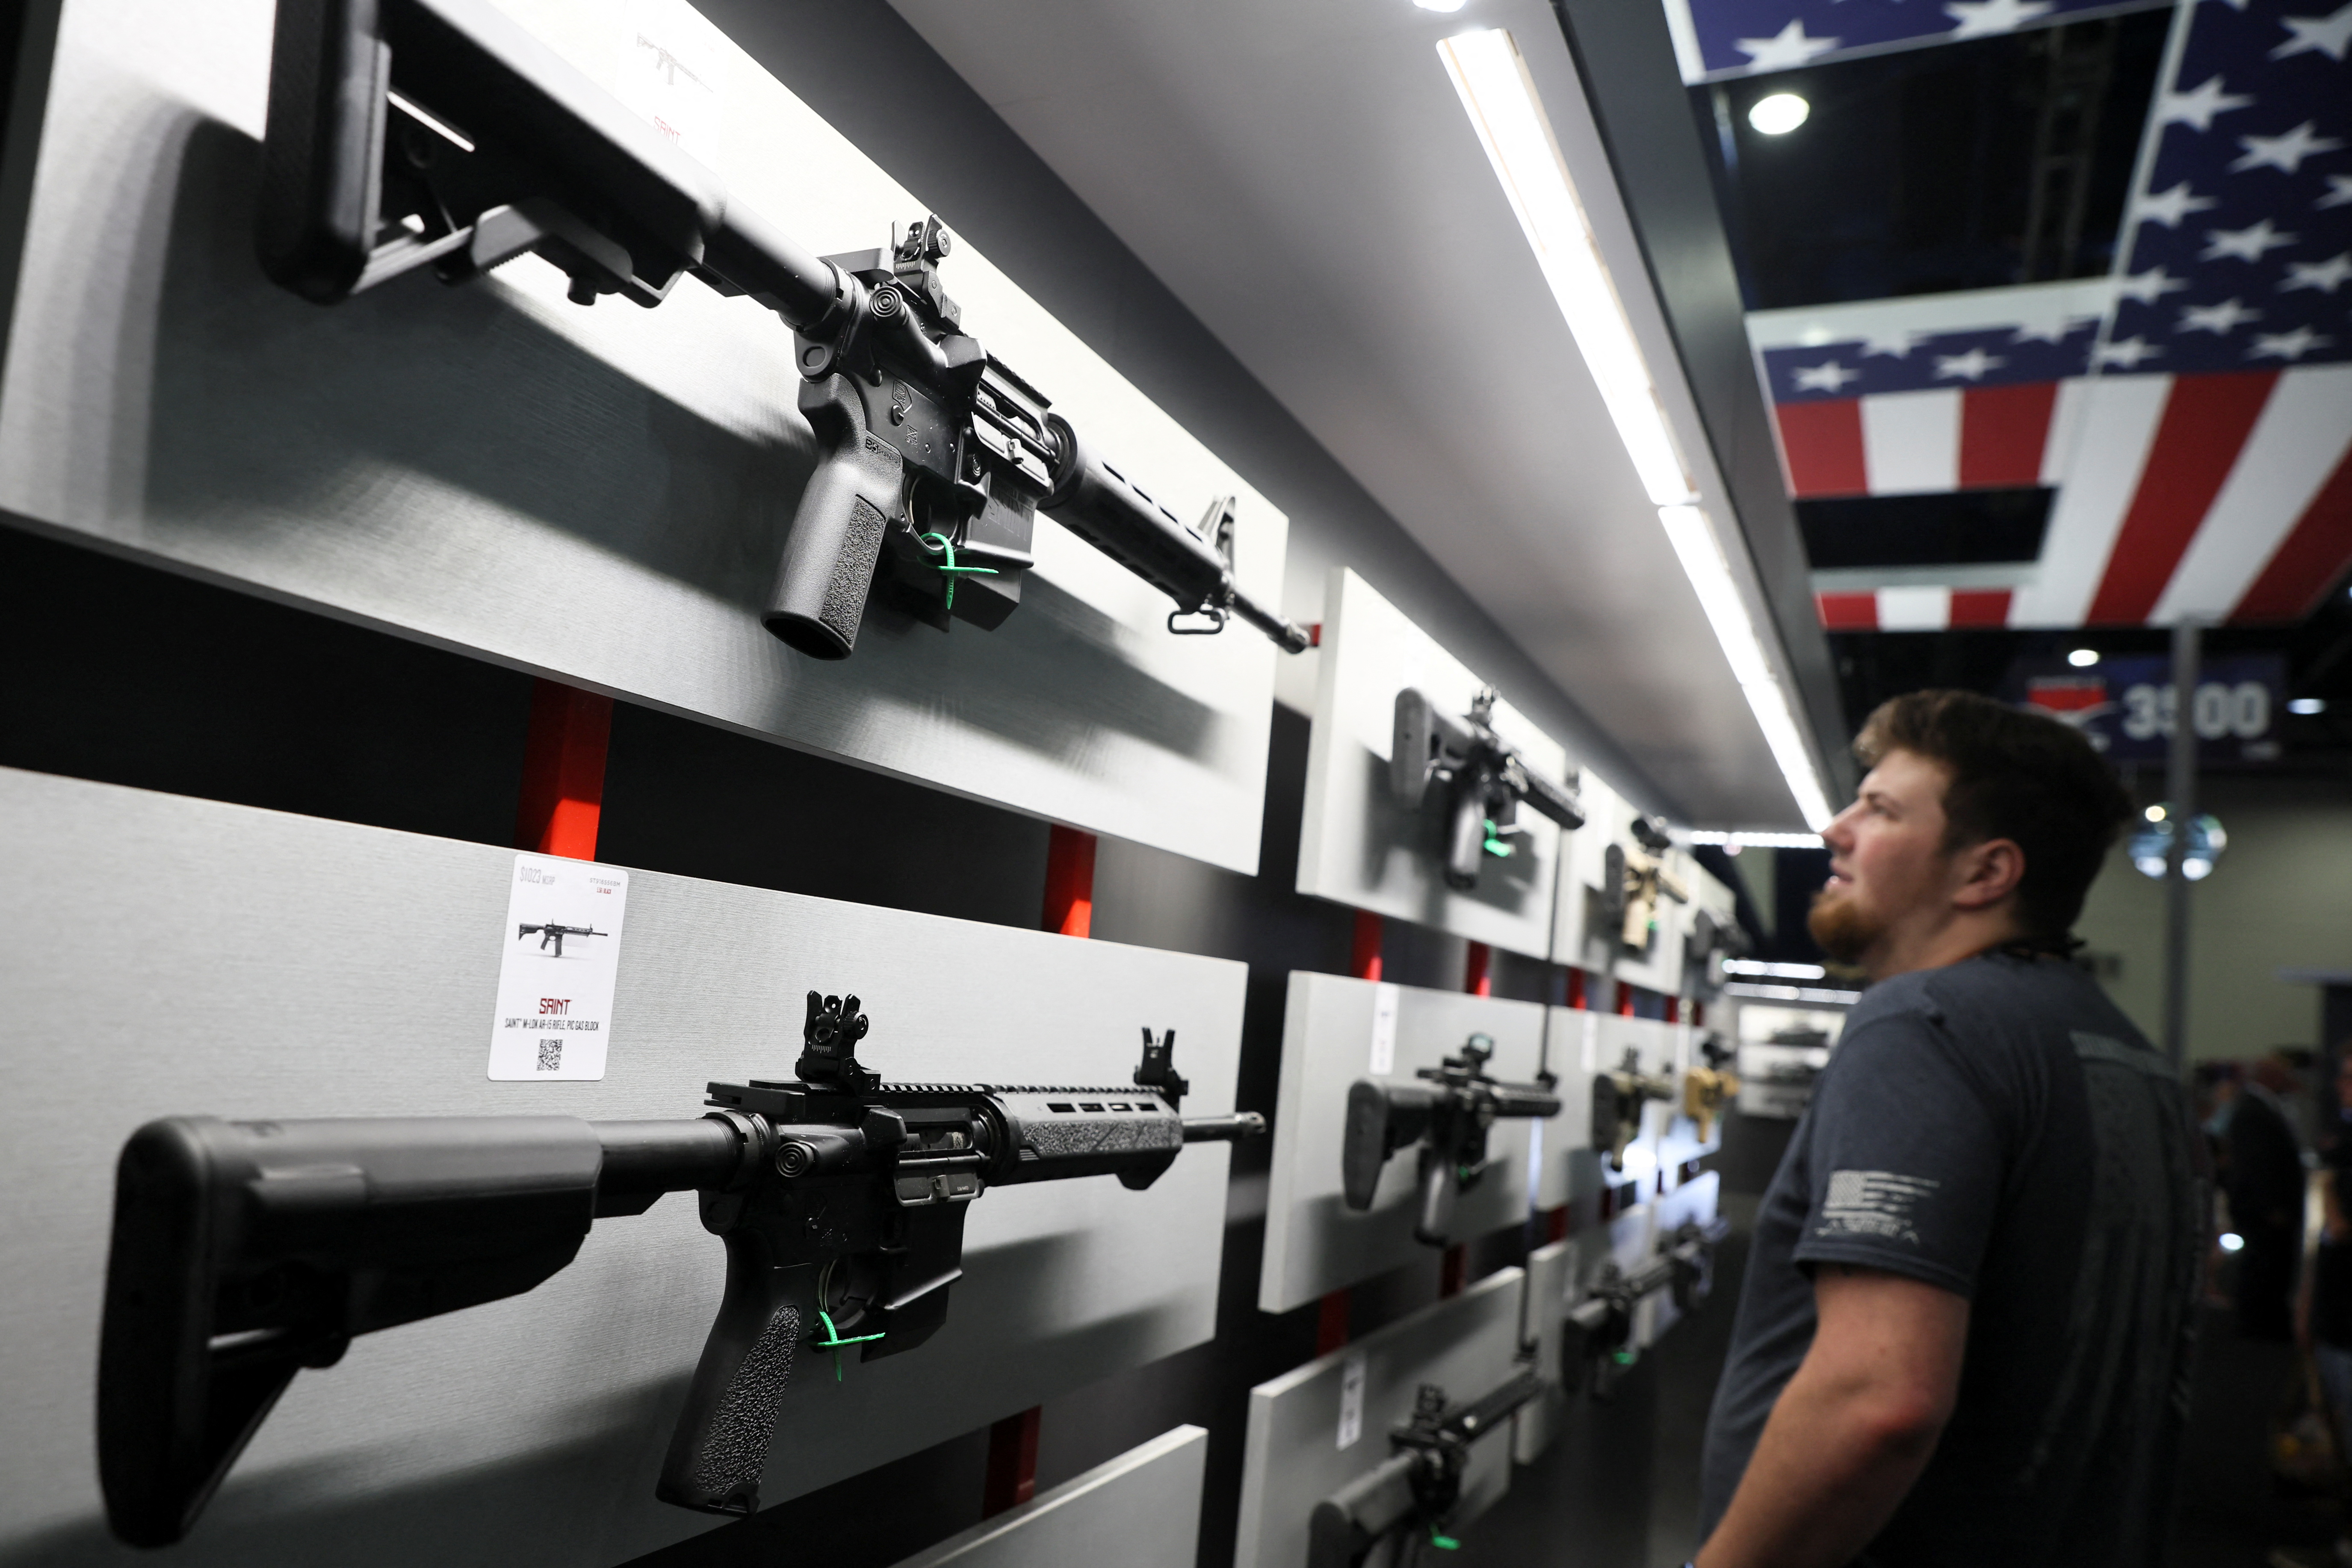 Un hombre mira los rifles de la marca Saint durante la convención anual de la Asociación Nacional del Rifle (NRA) en Houston, Texas, Estados Unidos, el 27 de mayo de 2022. REUTERS/Shannon Stapleton